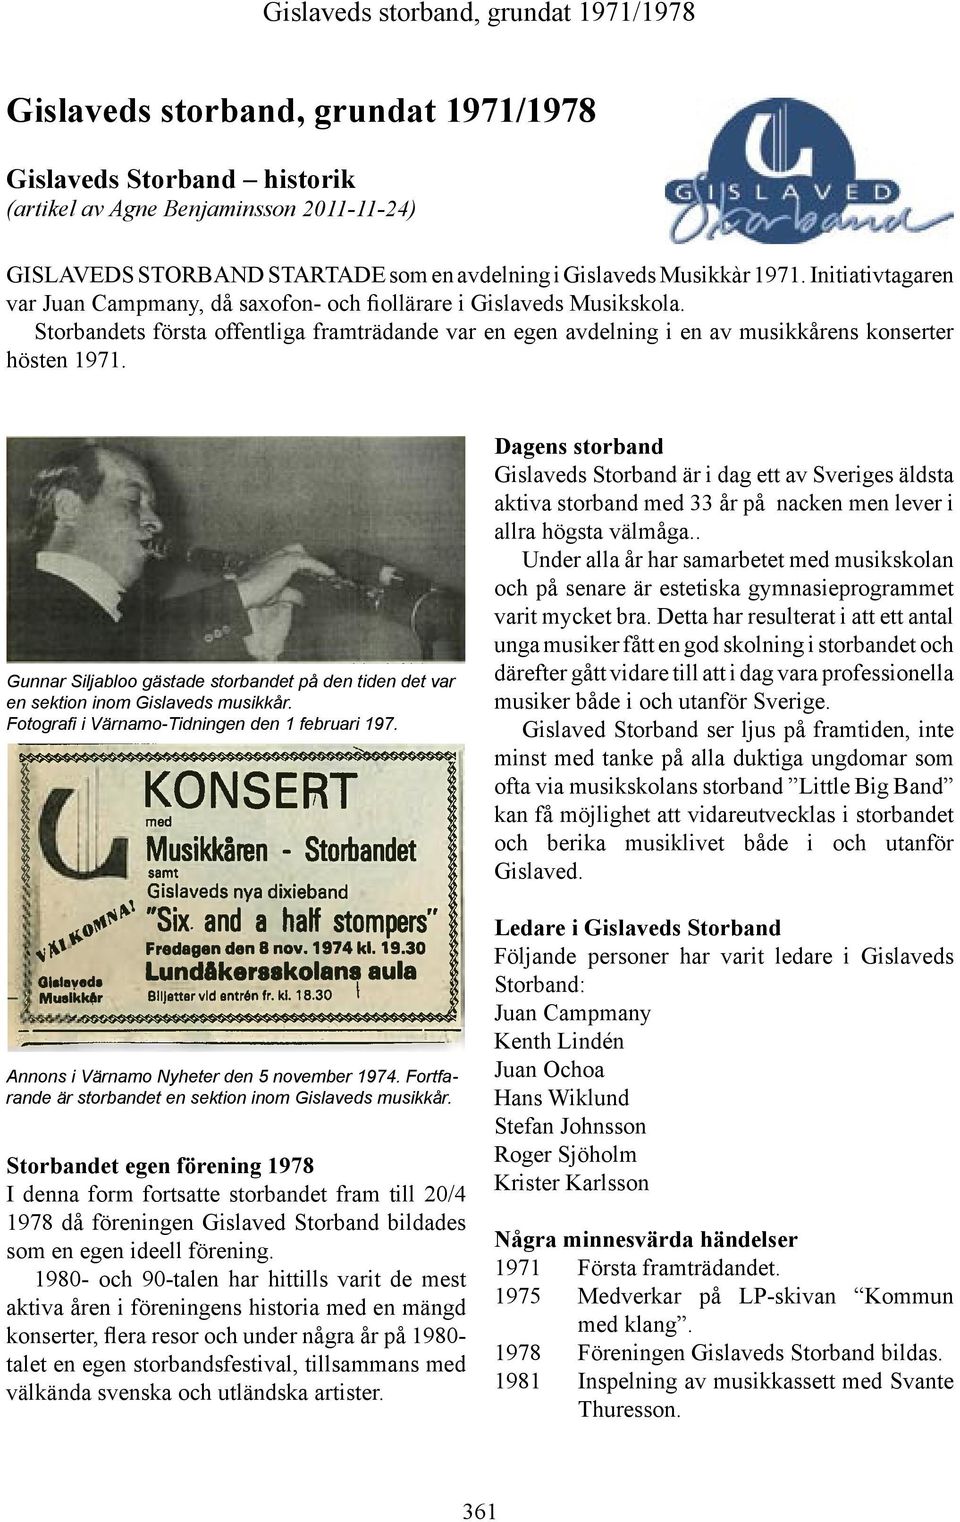 Gunnar Siljabloo gästade storbandet på den tiden det var en sektion inom Gislaveds musikkår. Fotografi i Värnamo-Tidningen den 1 februari 197. Annons i Värnamo Nyheter den 5 november 1974.